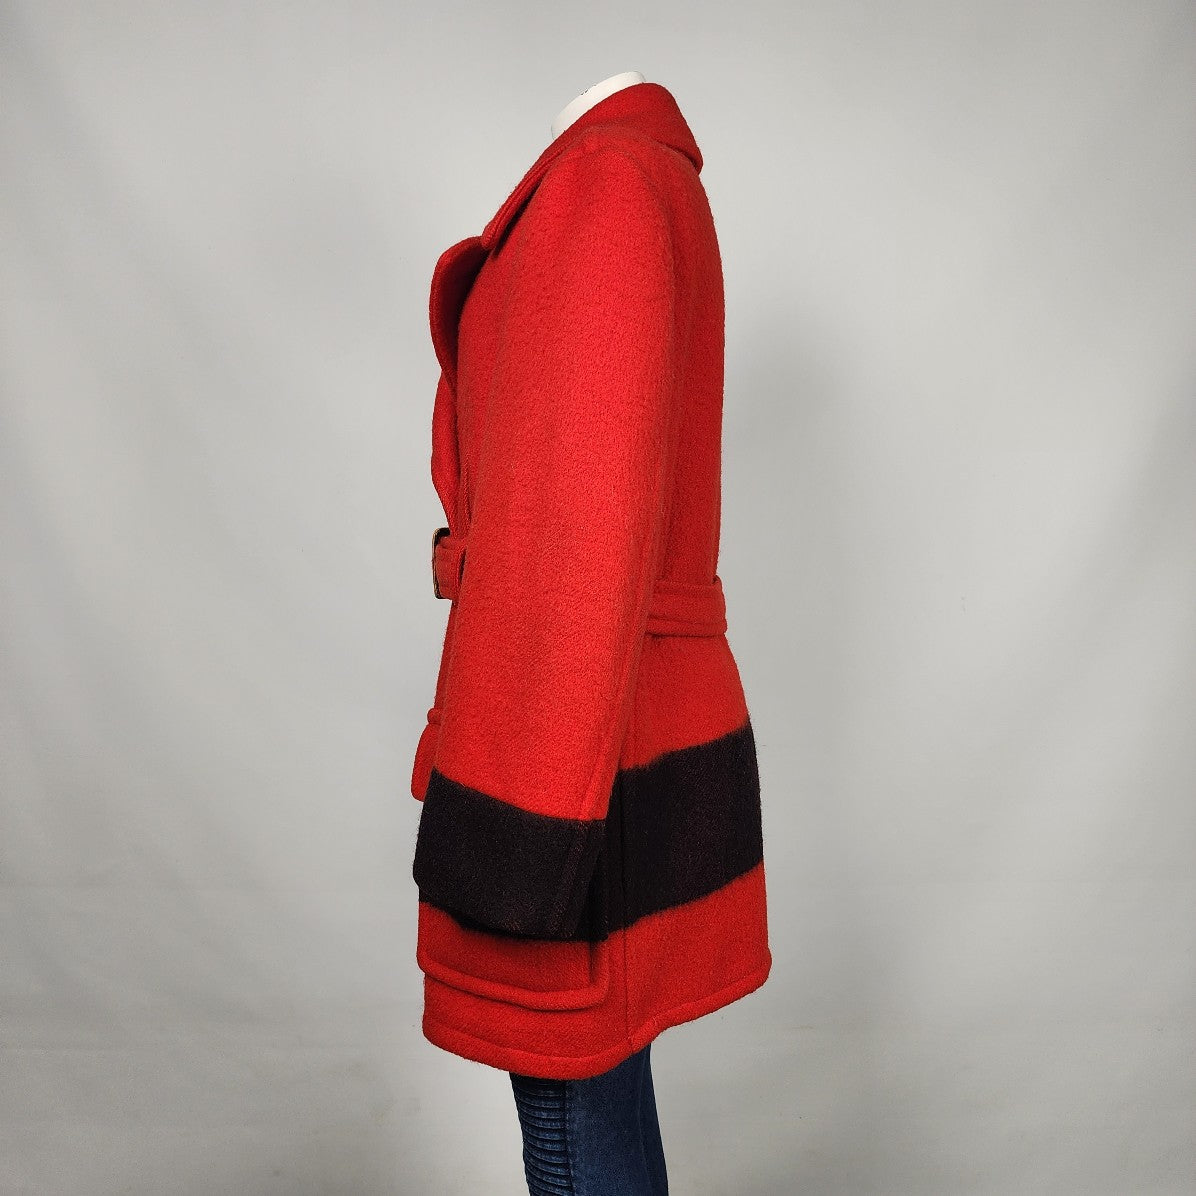 Vintage 1970s Hudson's Bay Red Point Blanket Pea Coat Size L